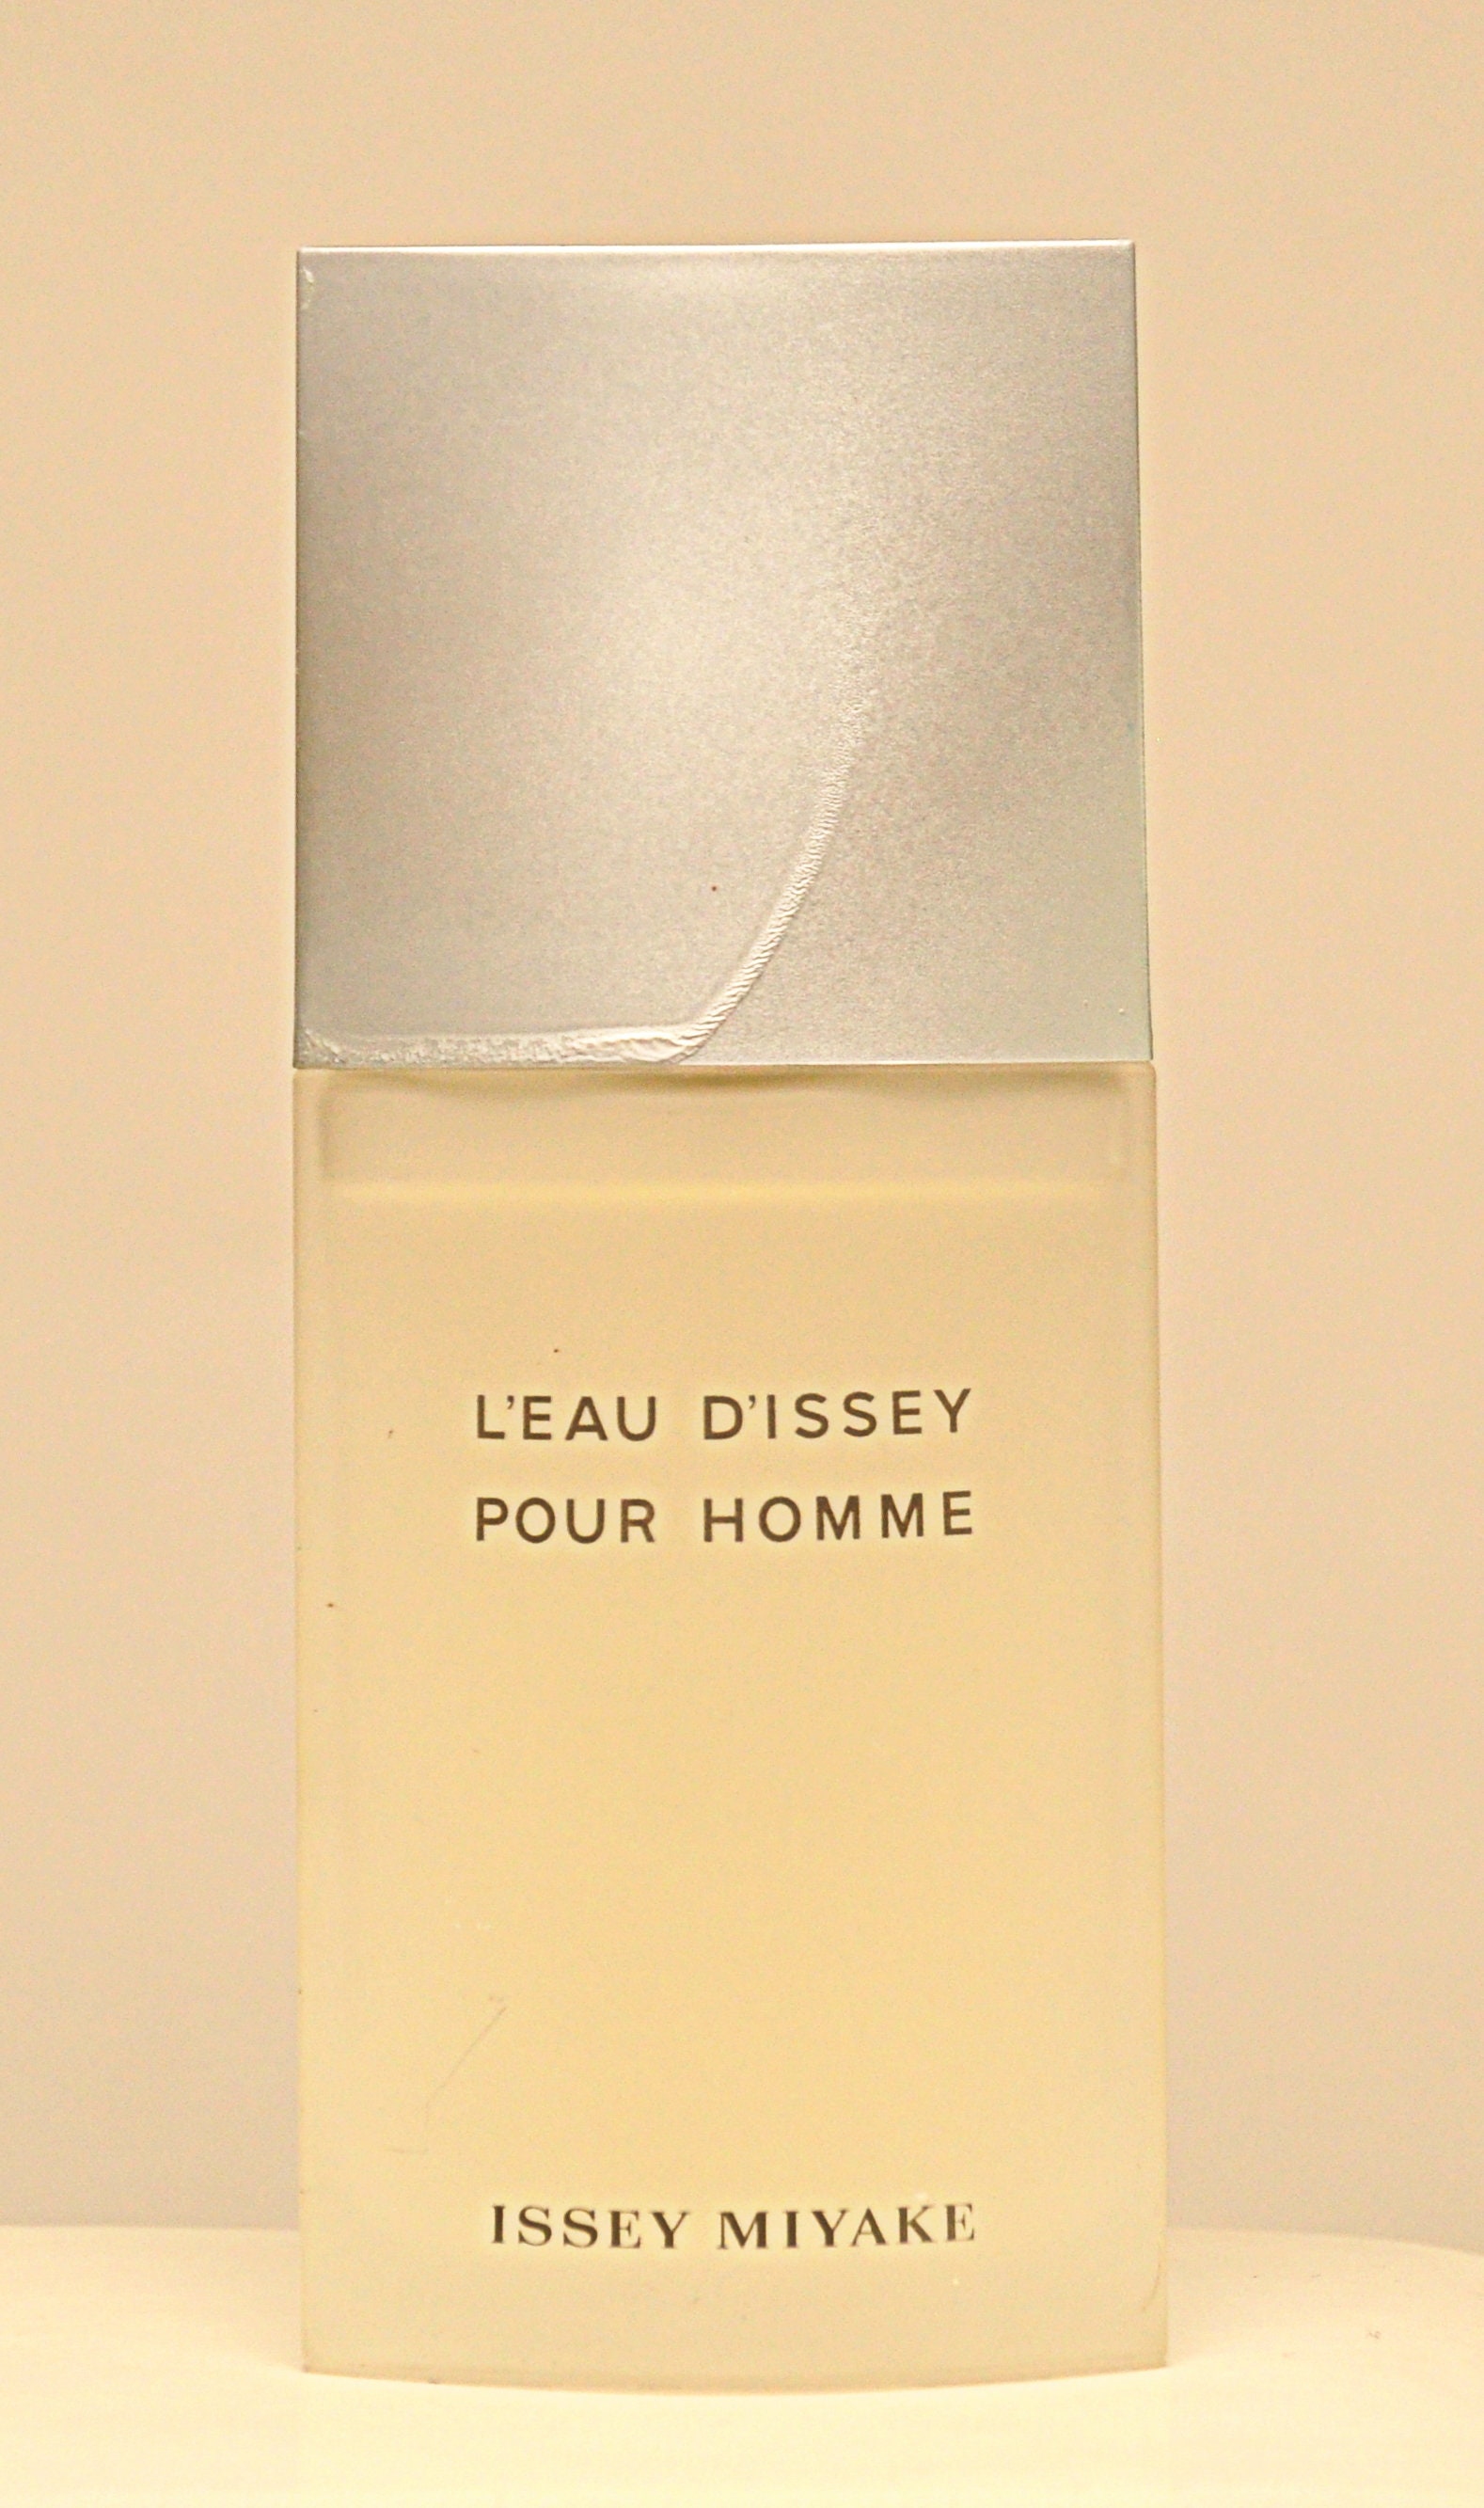 Issey Miyake L 'Eau d'Issey Pour Homme Eau de Toilette Spray 4.2 Oz -  Redbagstores